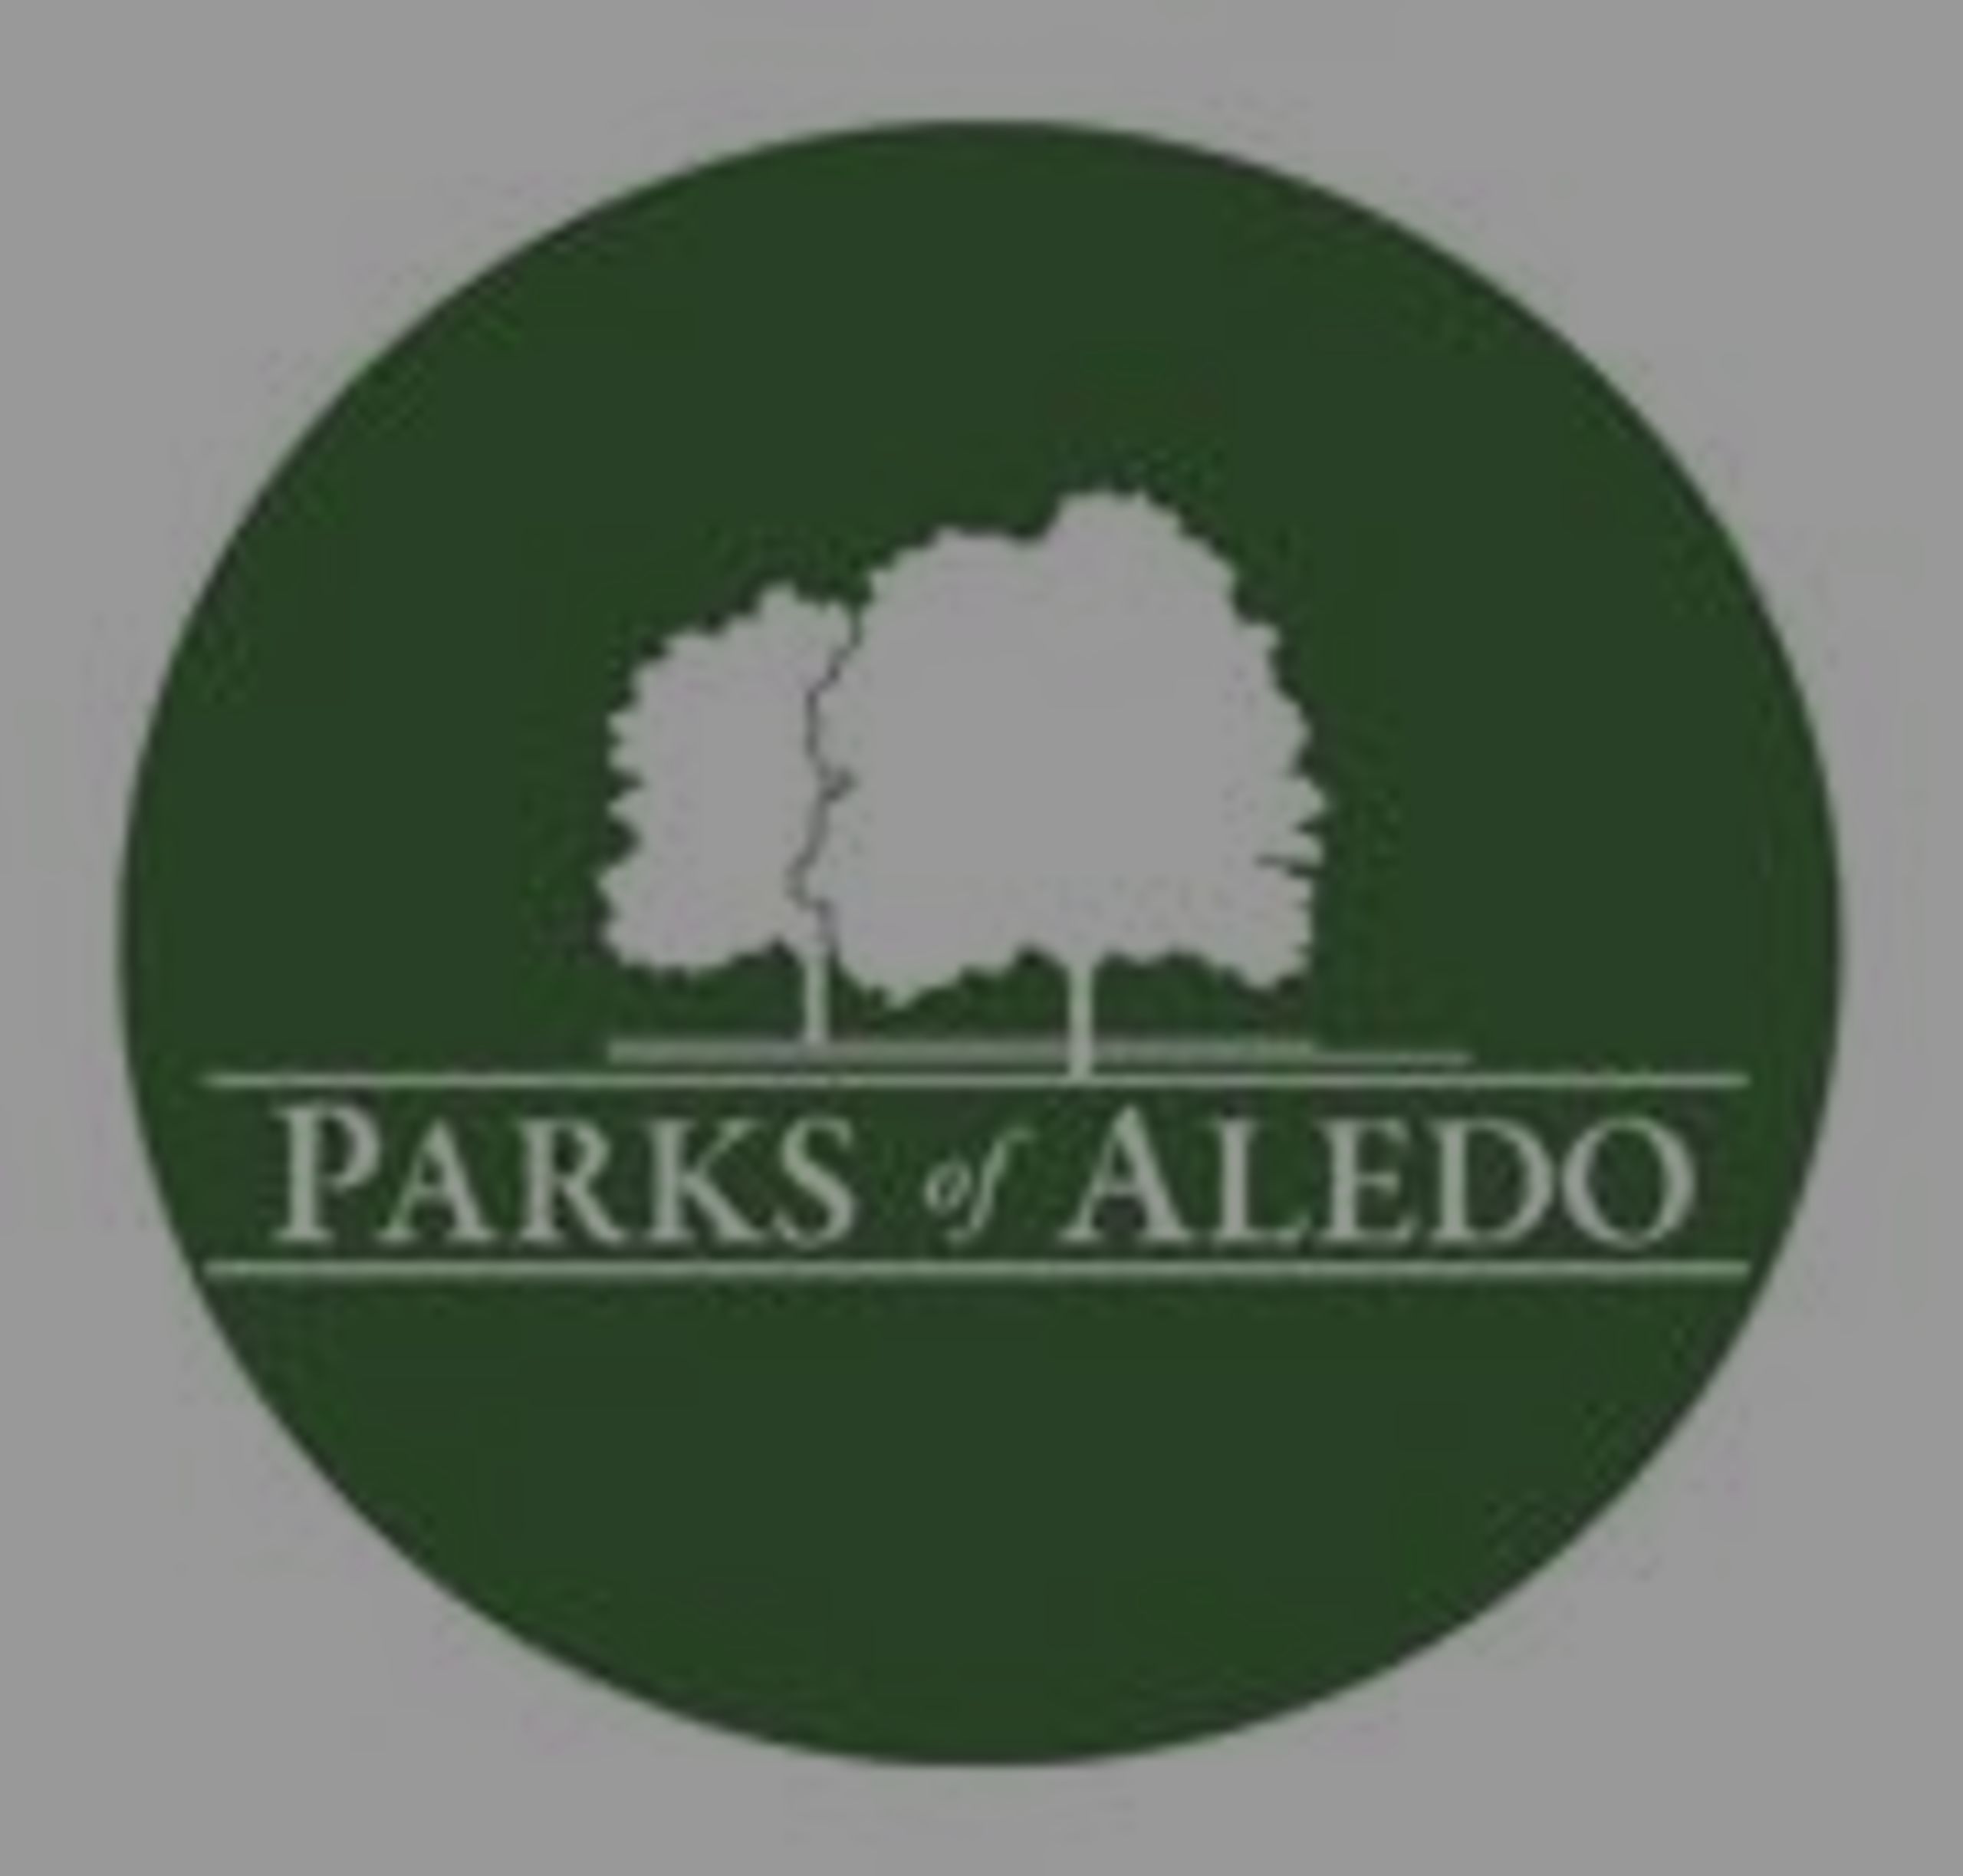 Parks of Aledo Market Stats